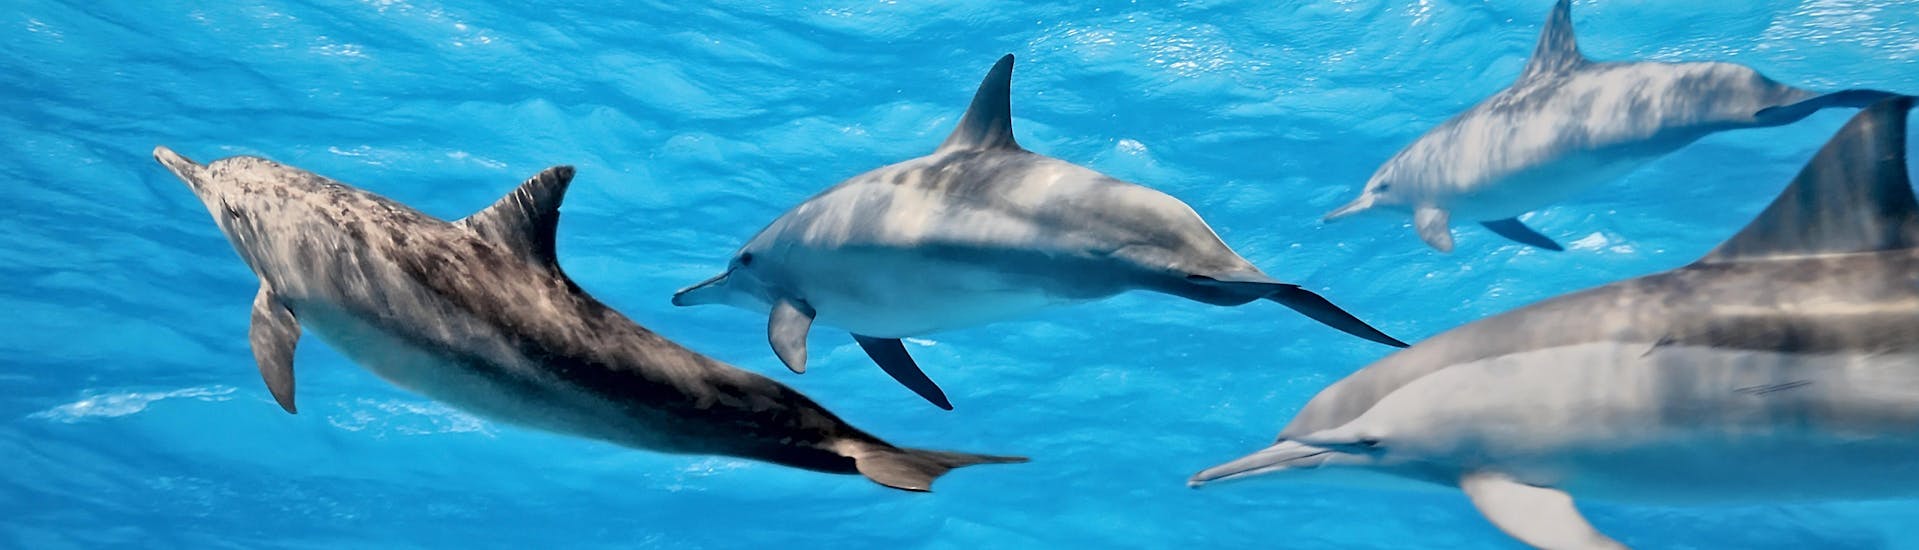 Observez les dauphins nager pendant votre balade en bateau et regardez-les sauter